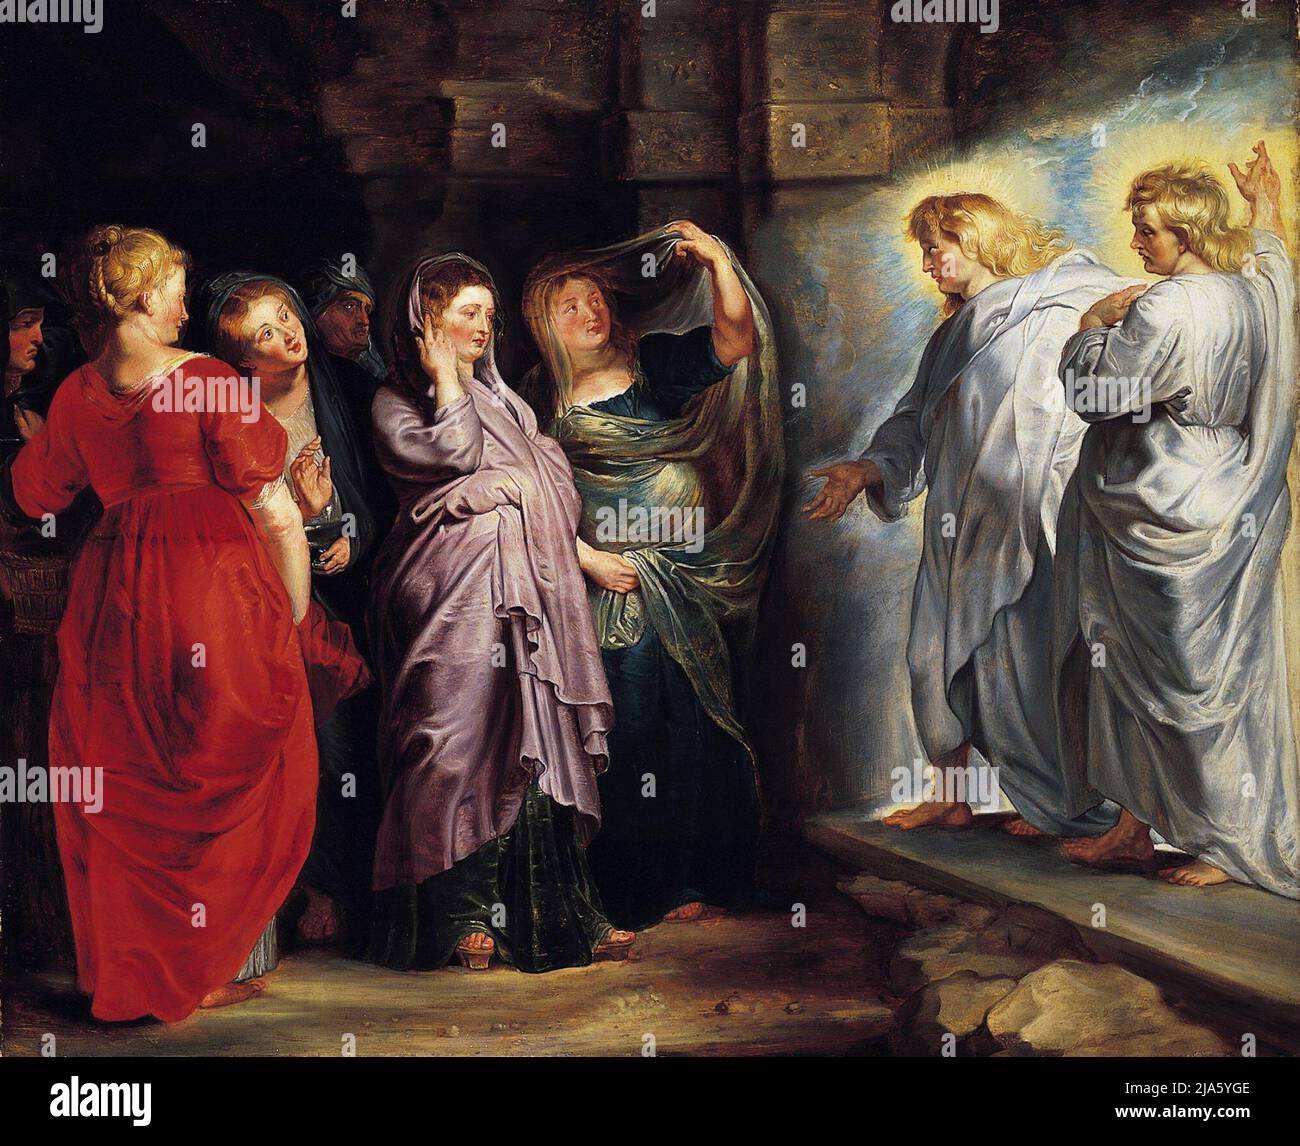 Le tre Marie alla Tomba di Gesù di Pietro Paolo Rubens, con Maria Maddalena in rosso Foto Stock